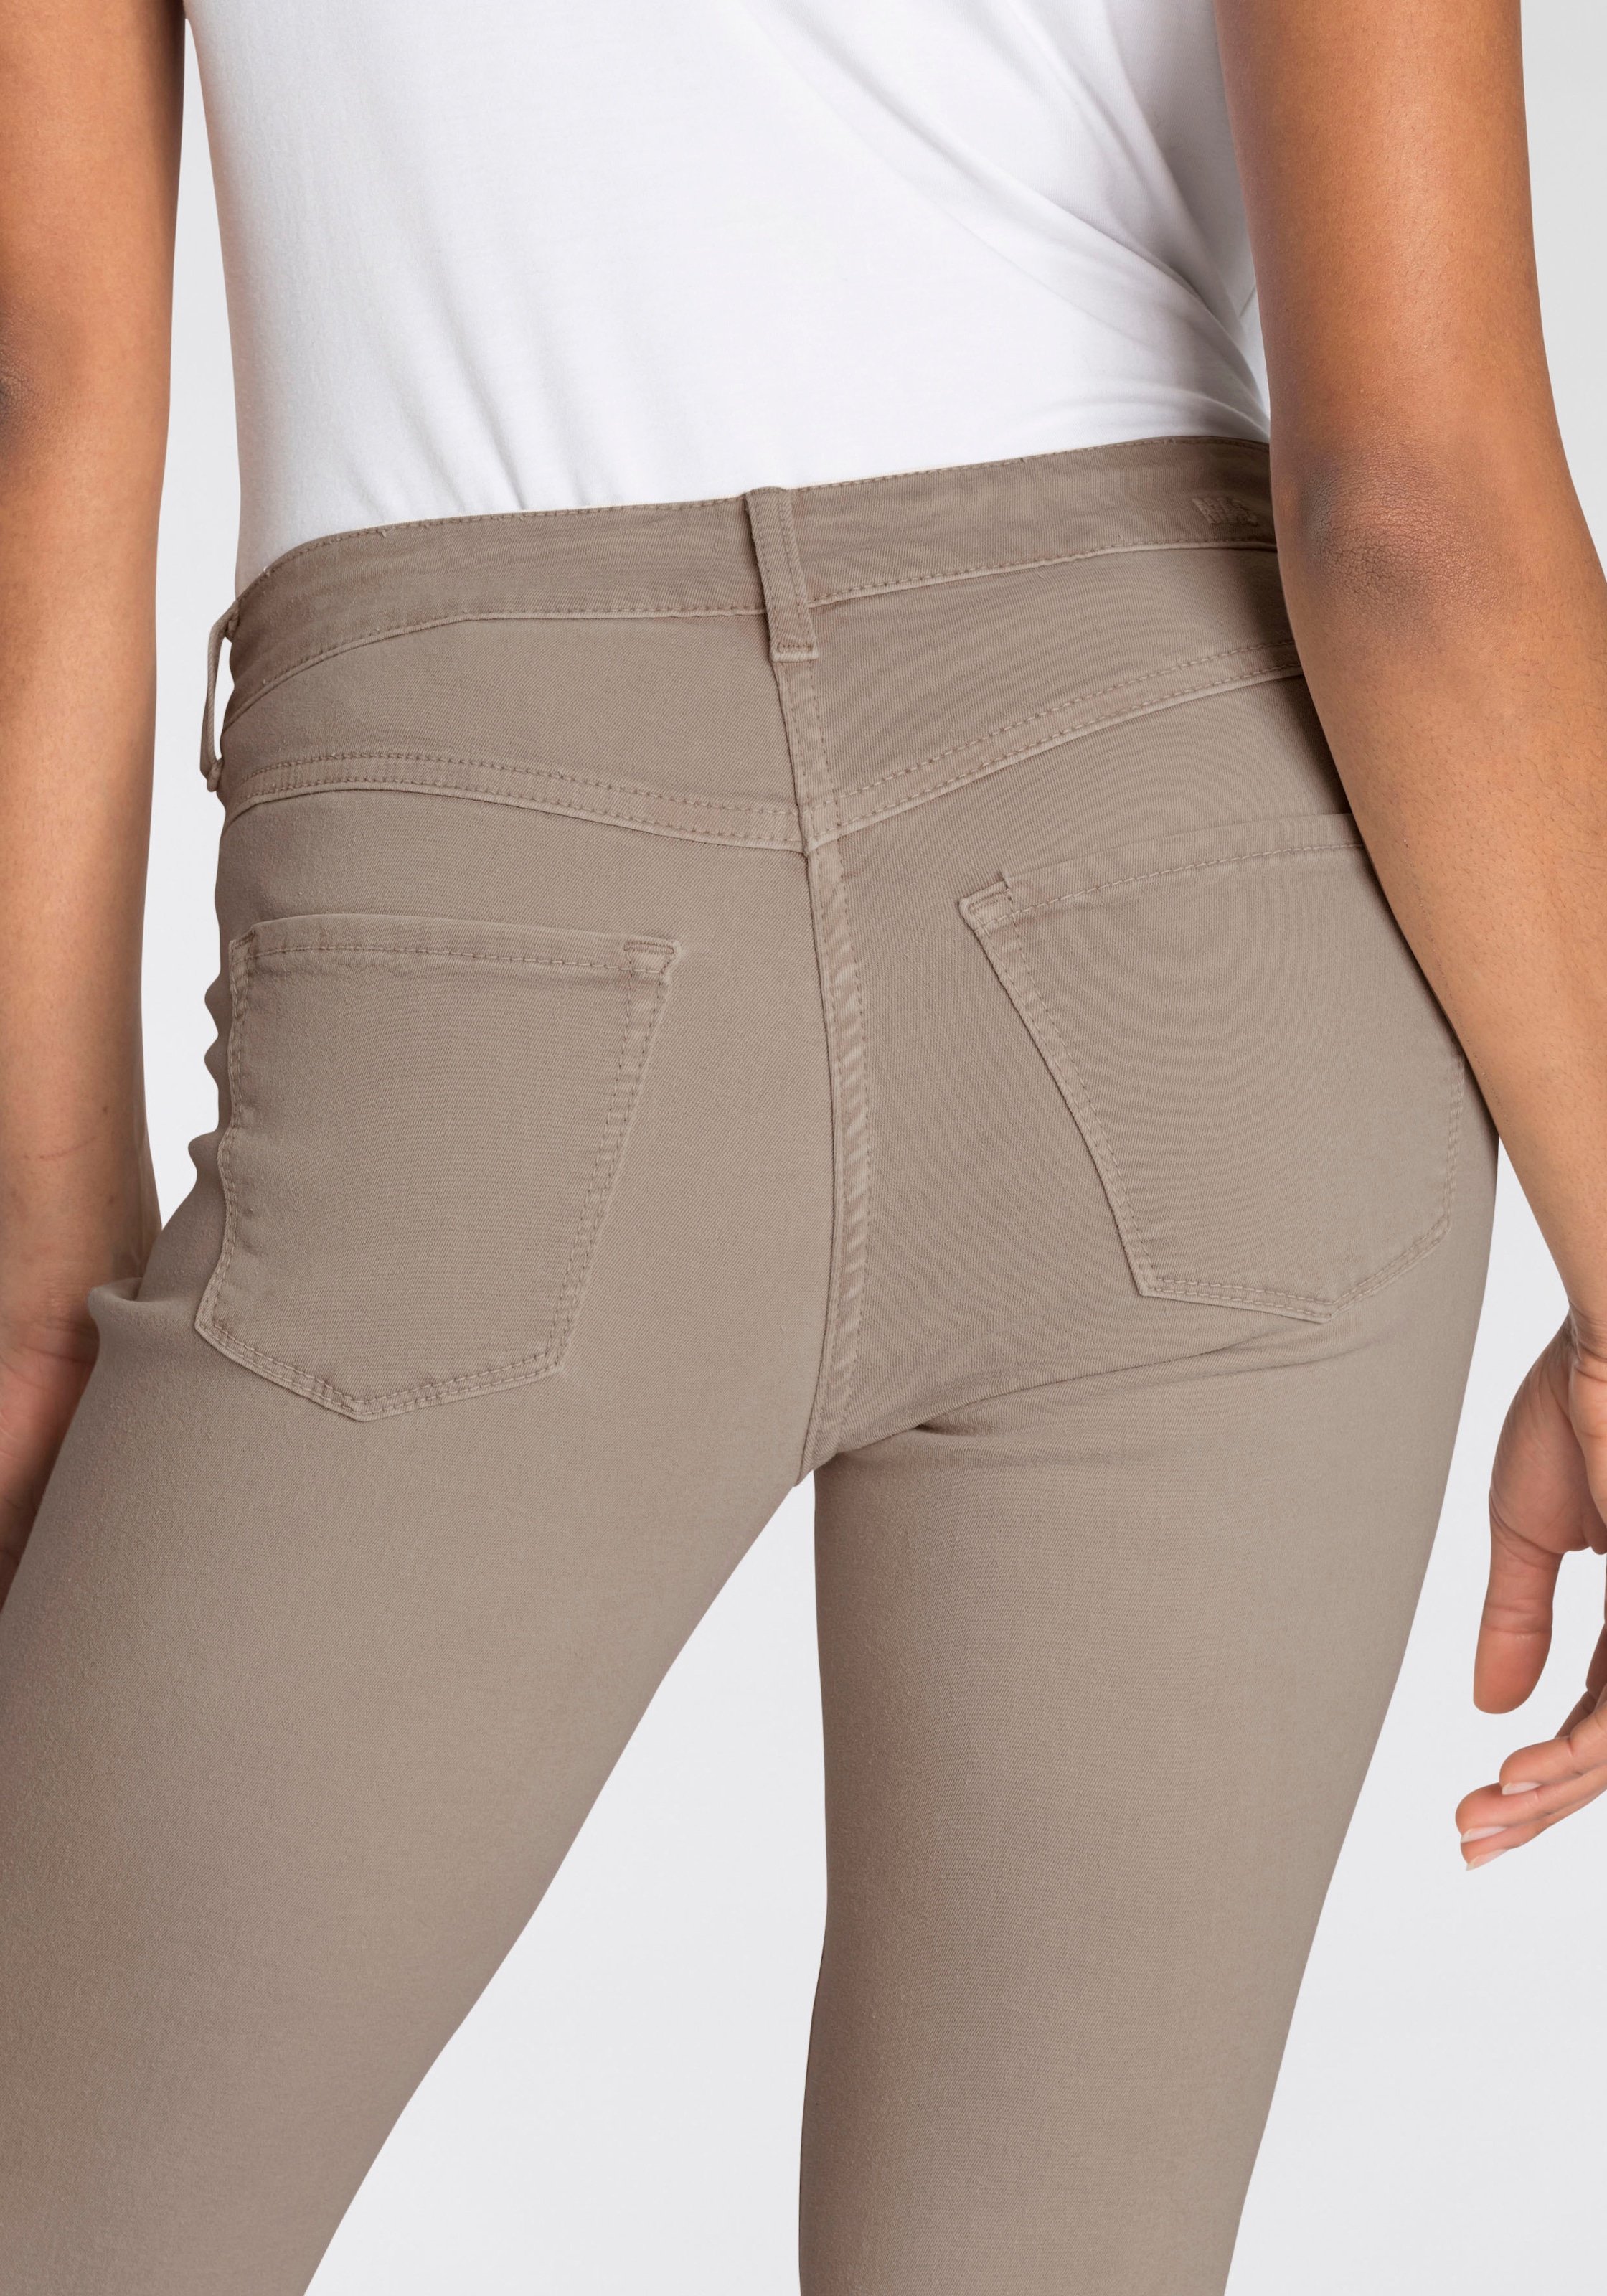 bestellen »Hiperstretch-Skinny«, Qualität Tag bequem Skinny-fit-Jeans den sitzt ganzen Power-Stretch MAC